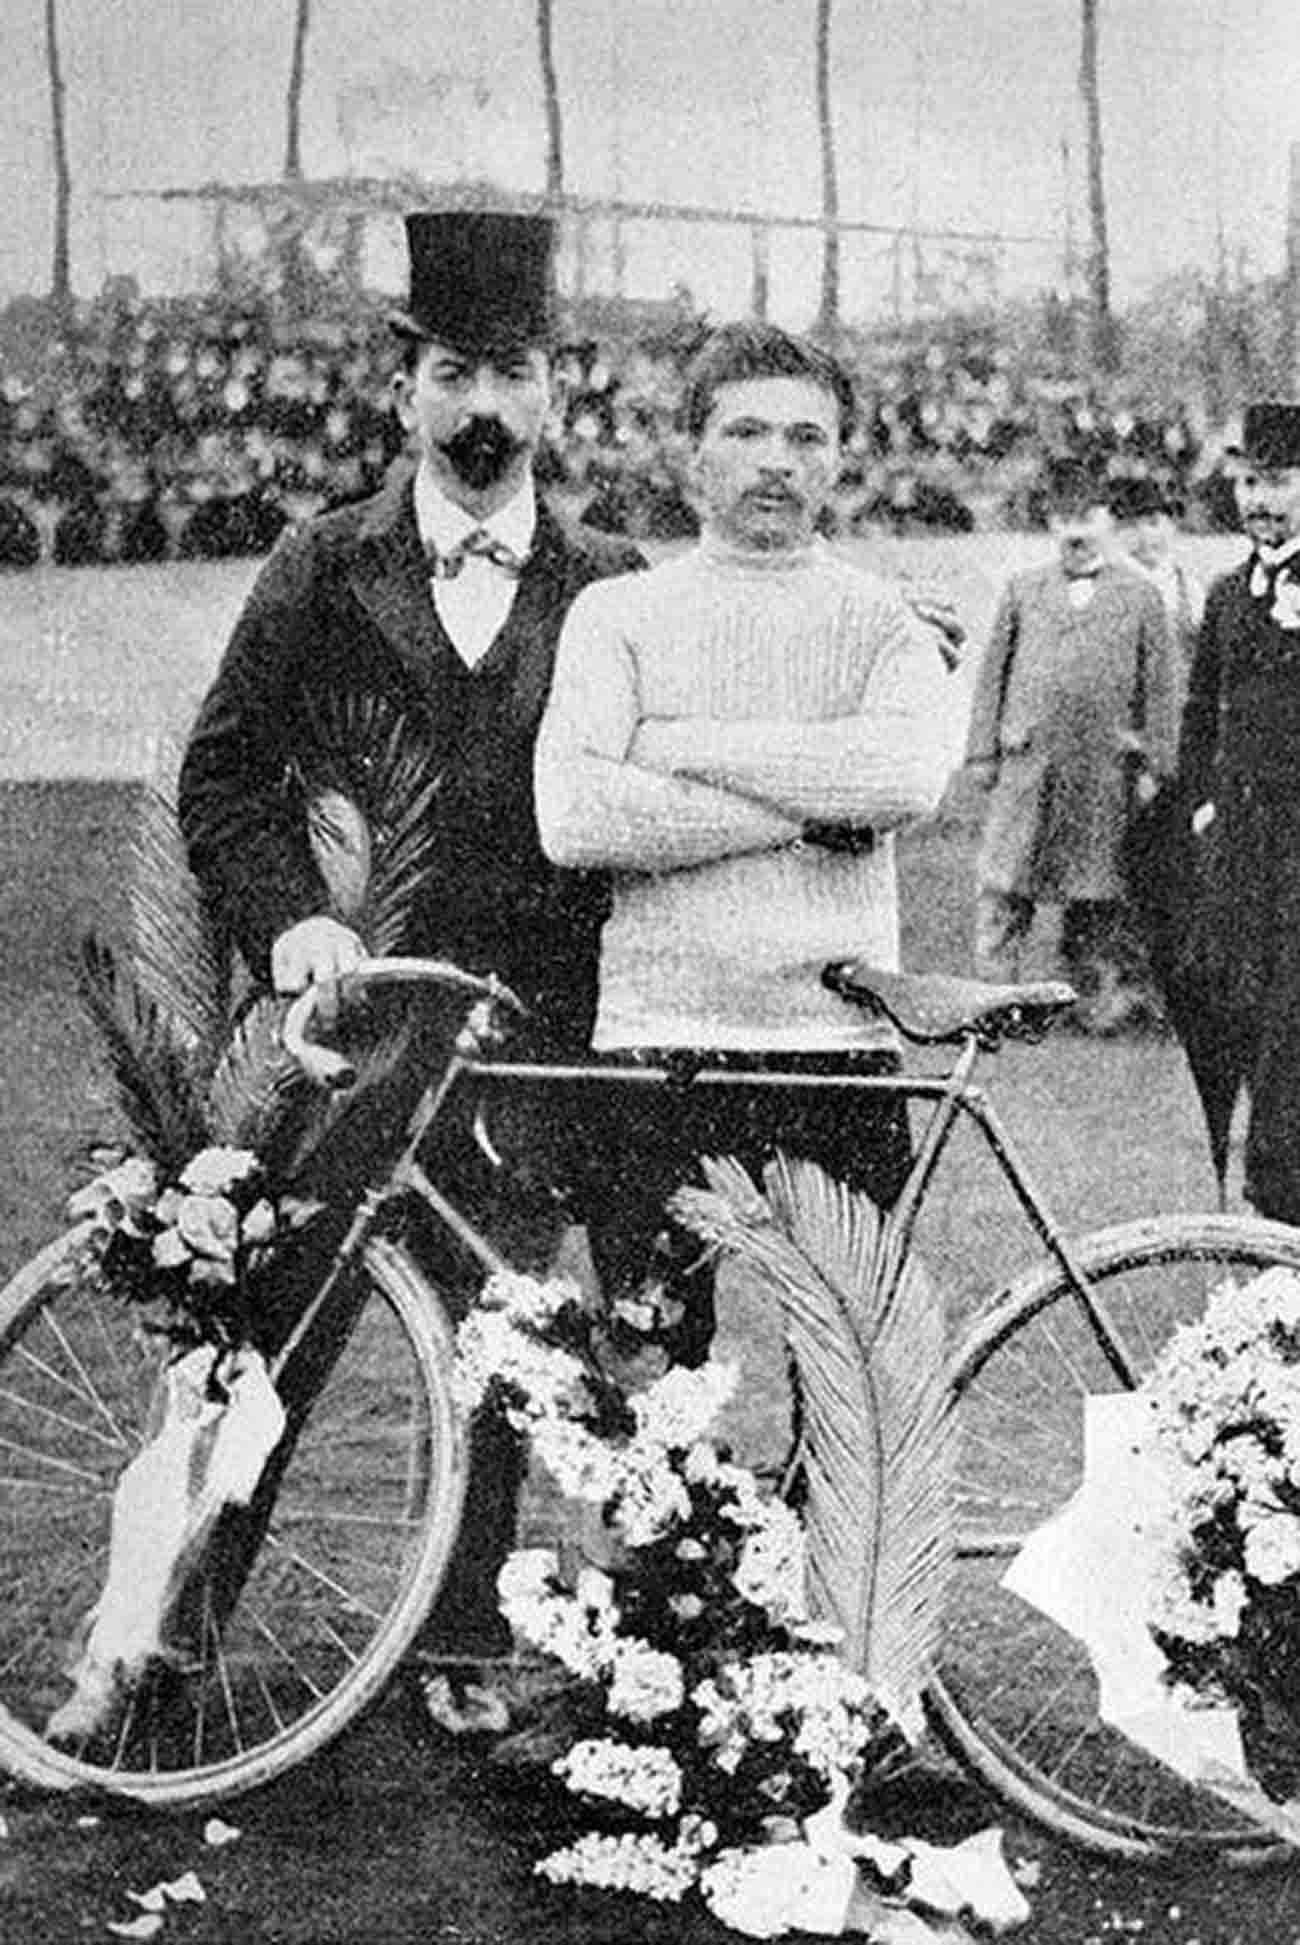 The 1903 Tour de France winner Maurice Garin.